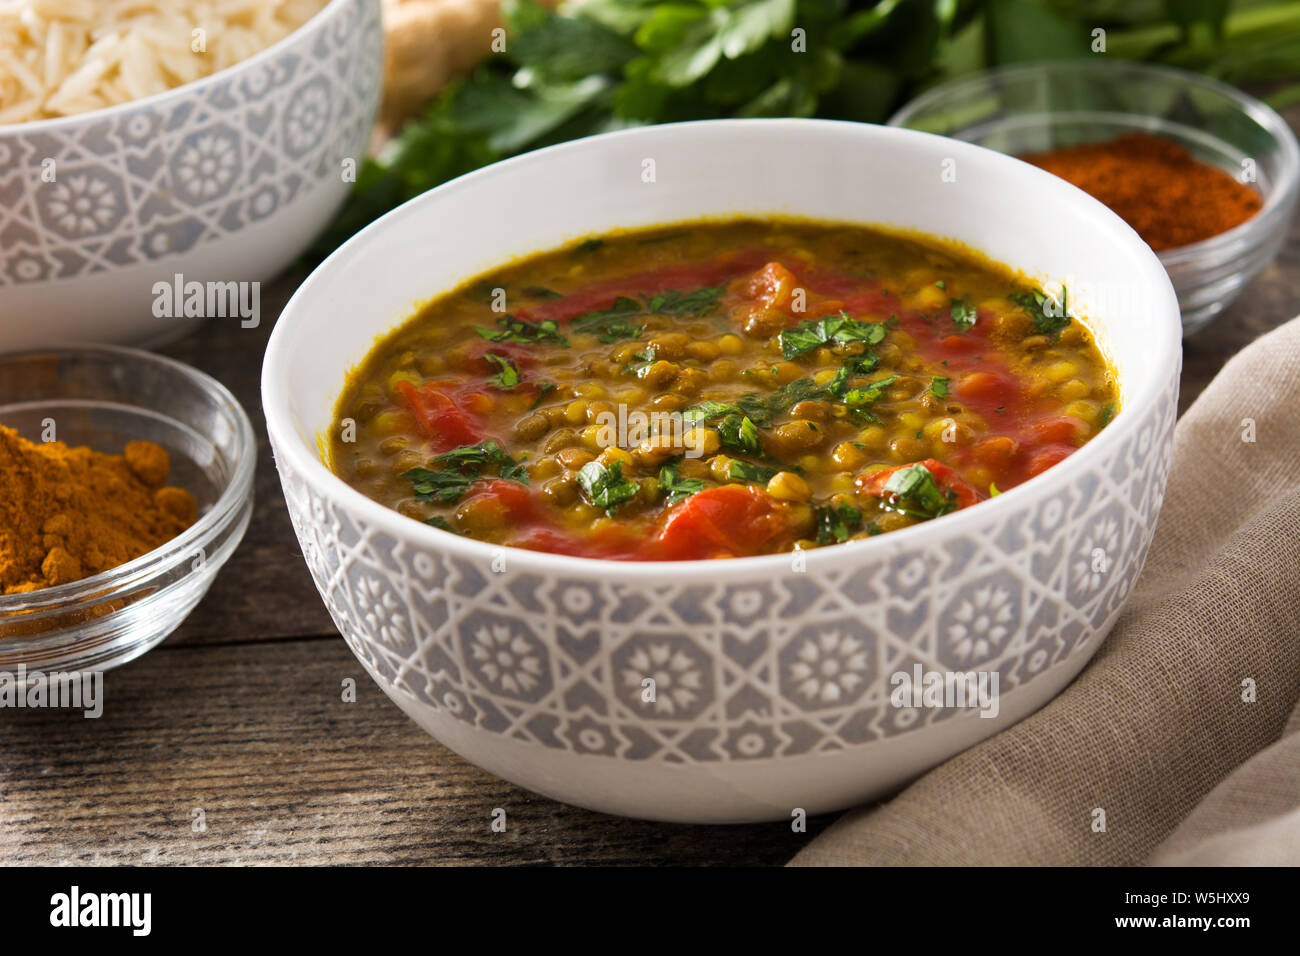 Soupe aux lentilles indiennes dal (dhal) dans un bol sur la table en bois Banque D'Images